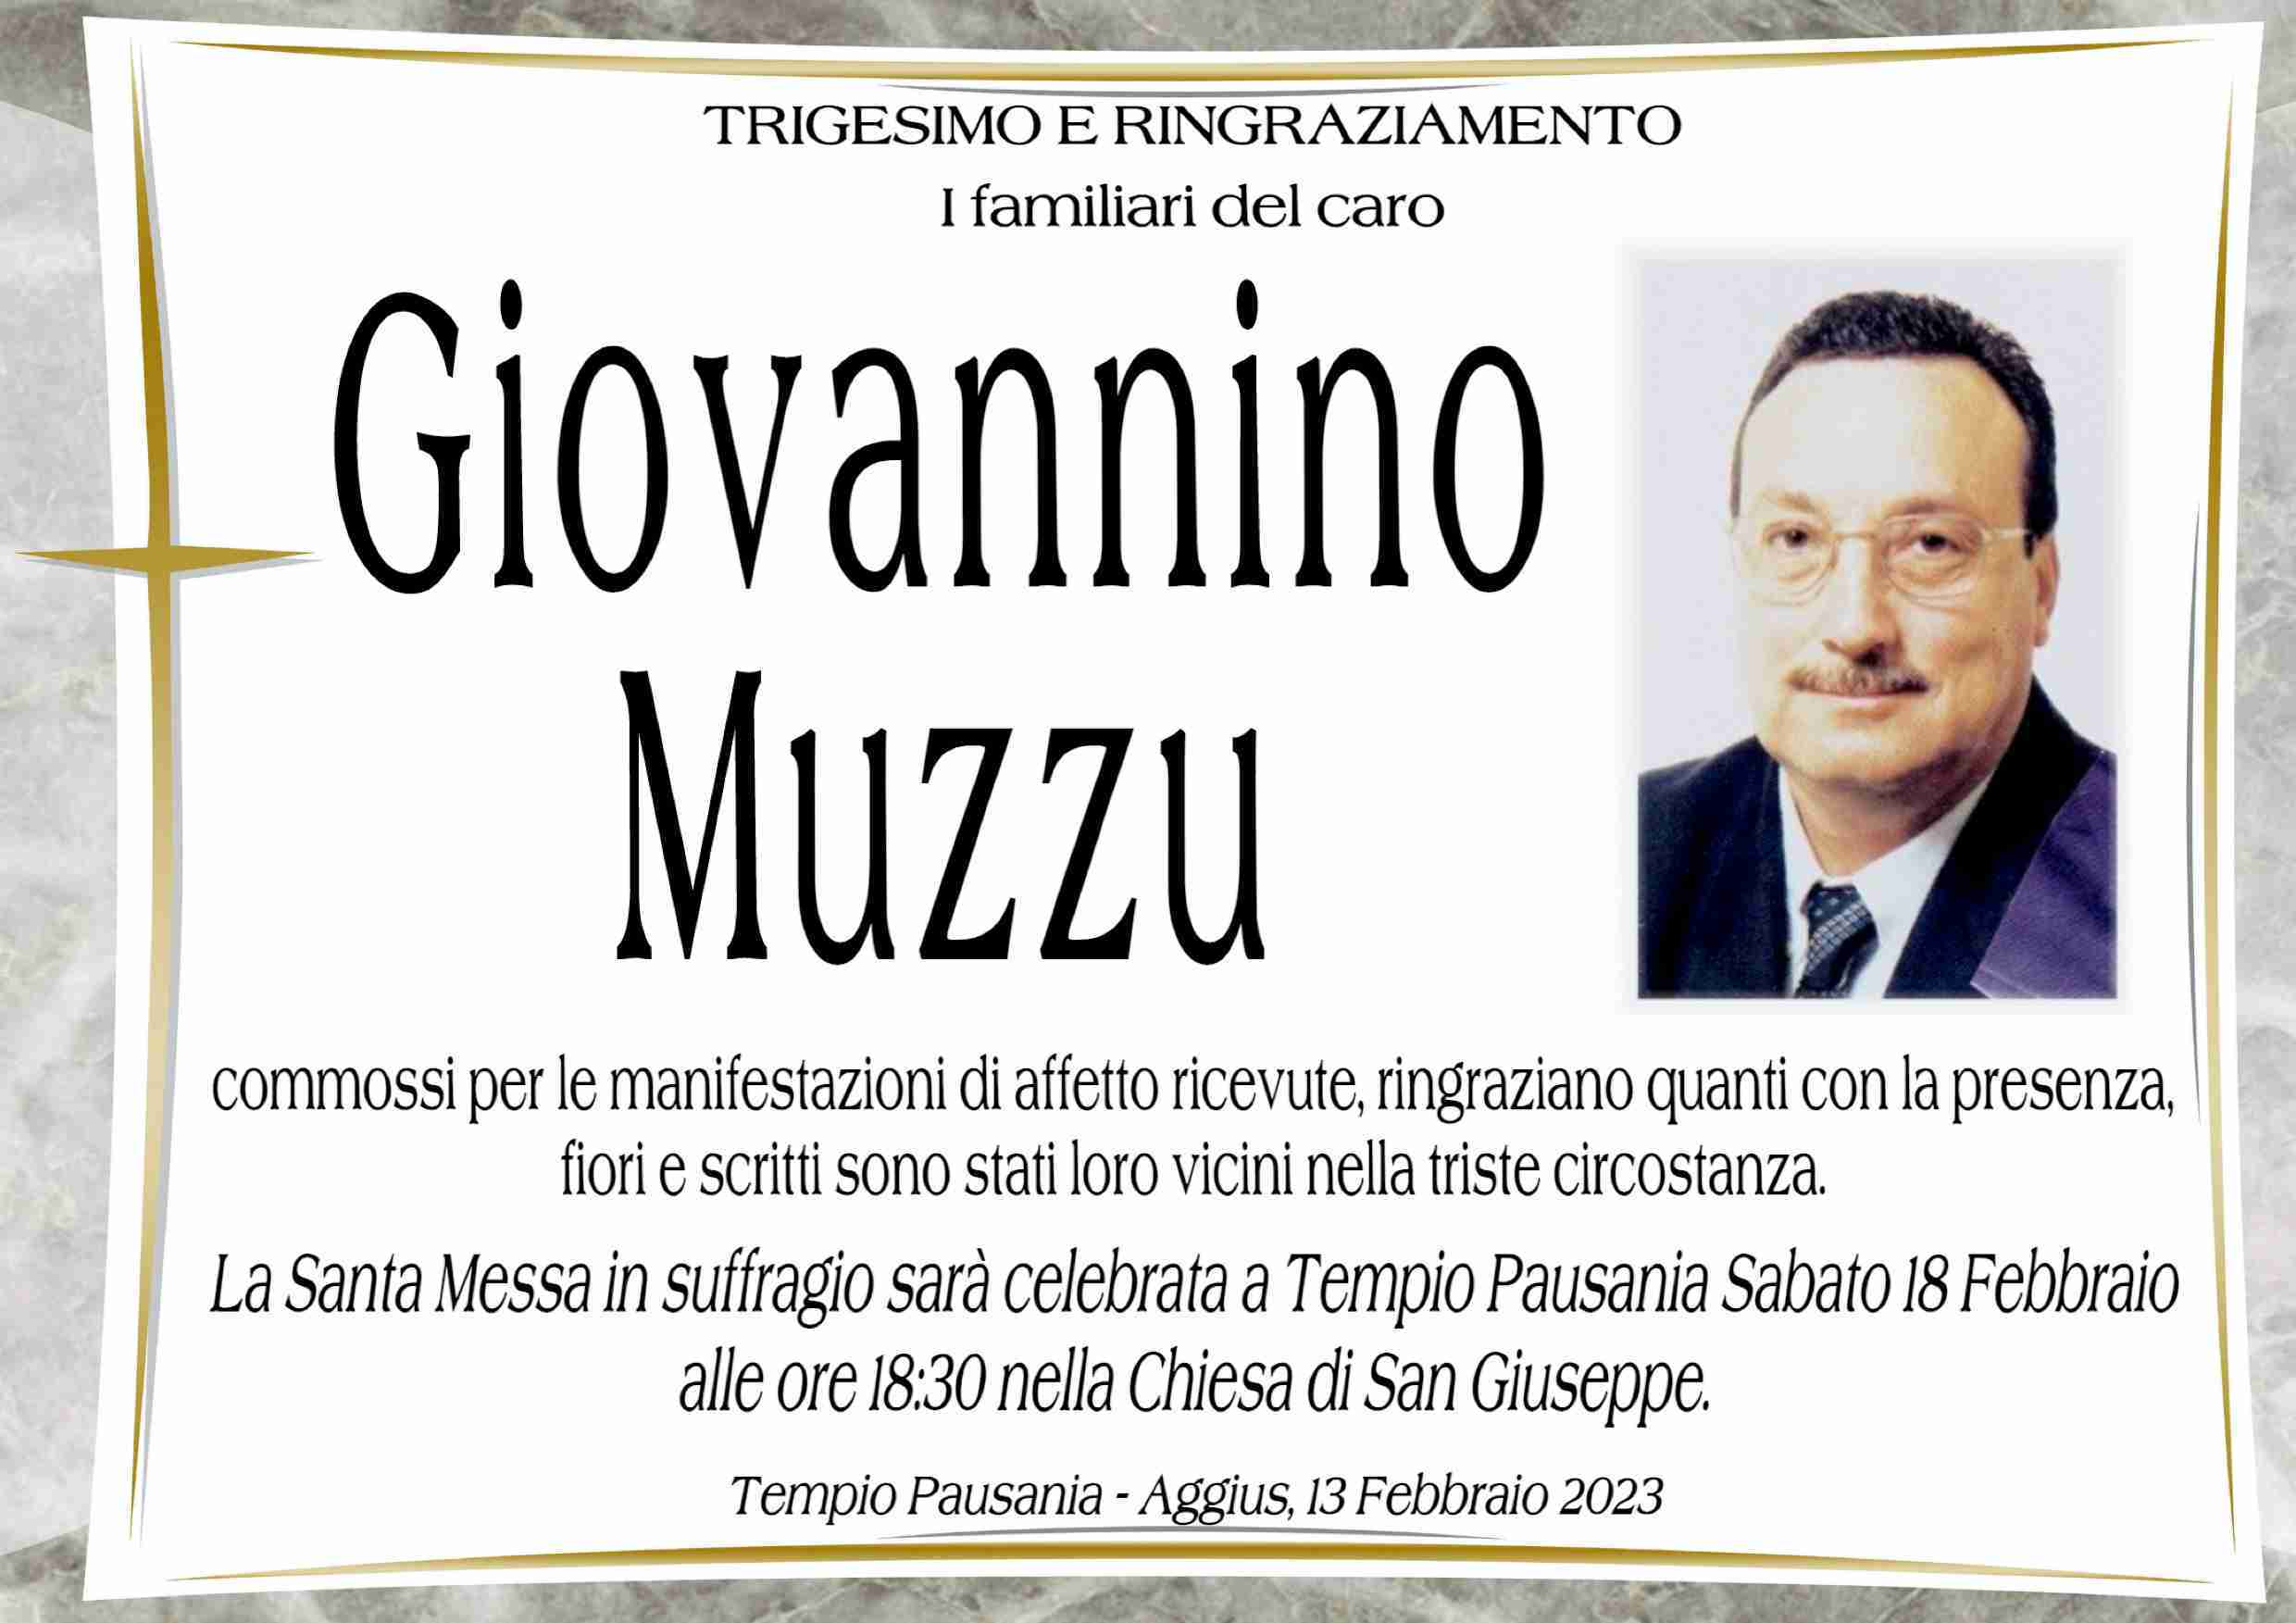 Giovannino Muzzu